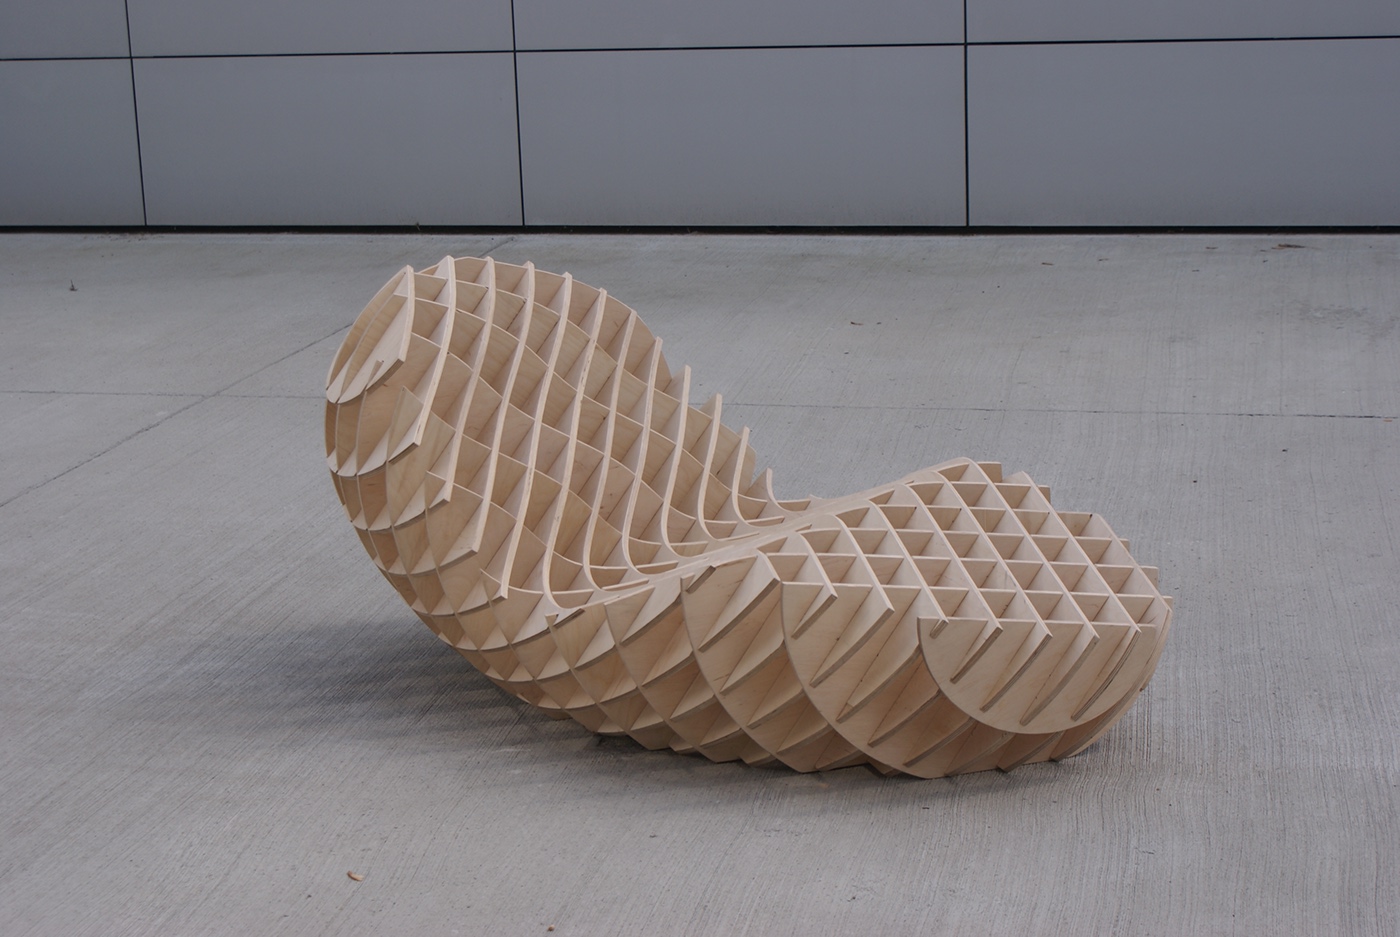 #industrialdesign #Design #seat #concept #furniture  #OrganicDesign #wooden #modern   Minimalism chair